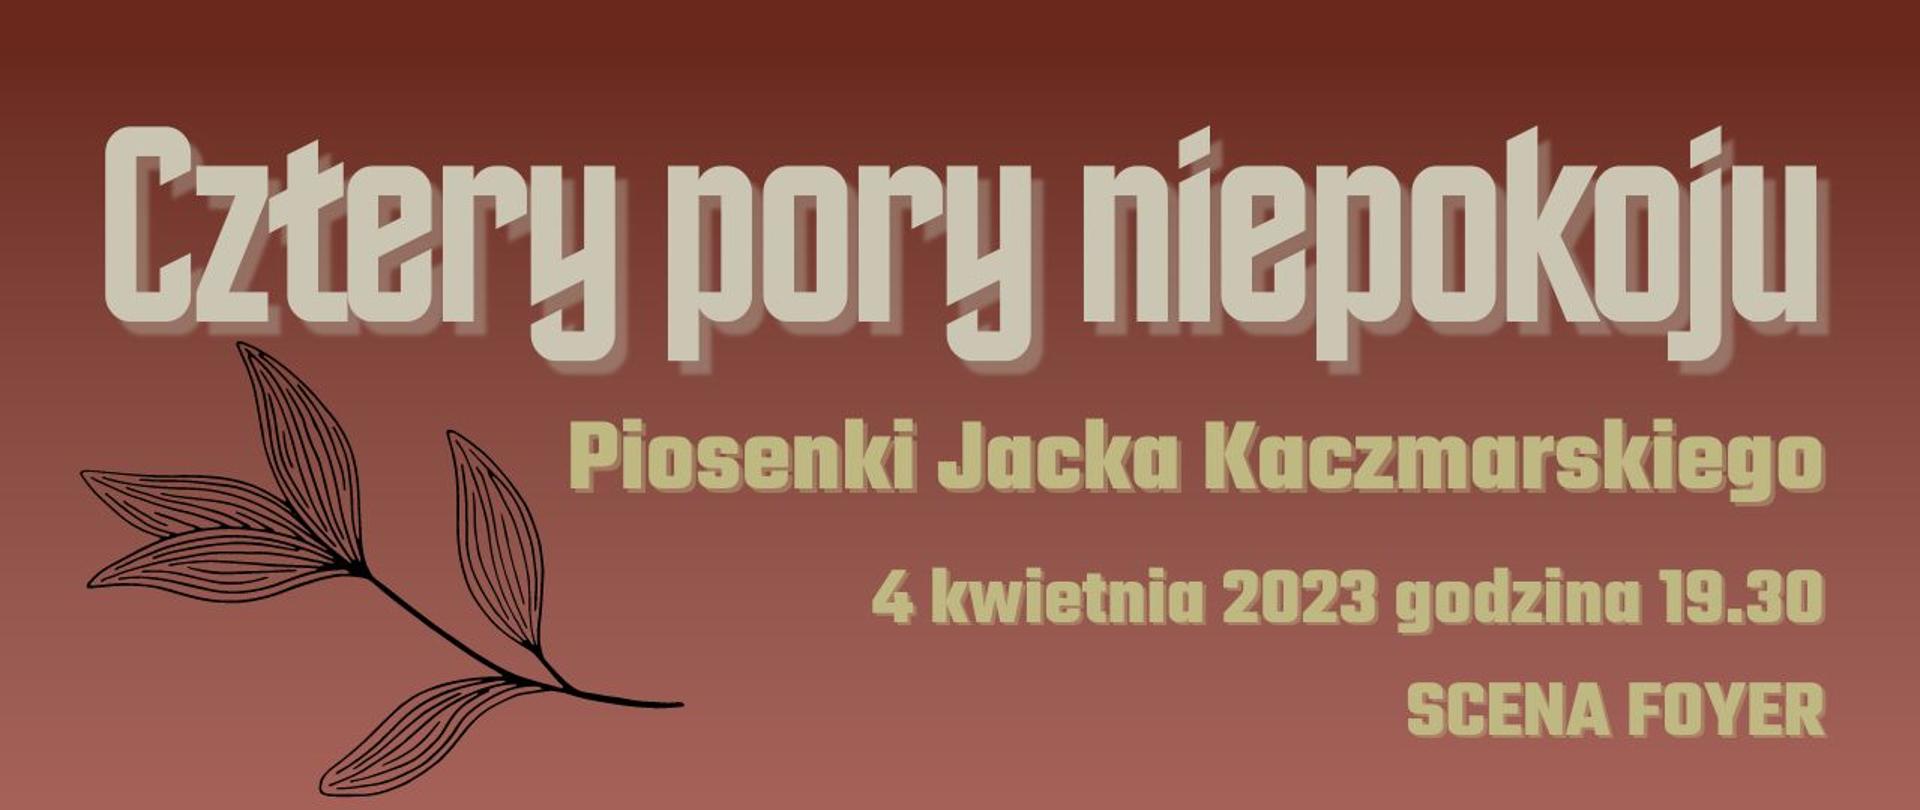 Afisz koncertu "Cztery pory niepokoju" - piosenki Jacka Kaczmarskiego, 4 kwietnia 2023 godzina 19.30, Scena Foyer